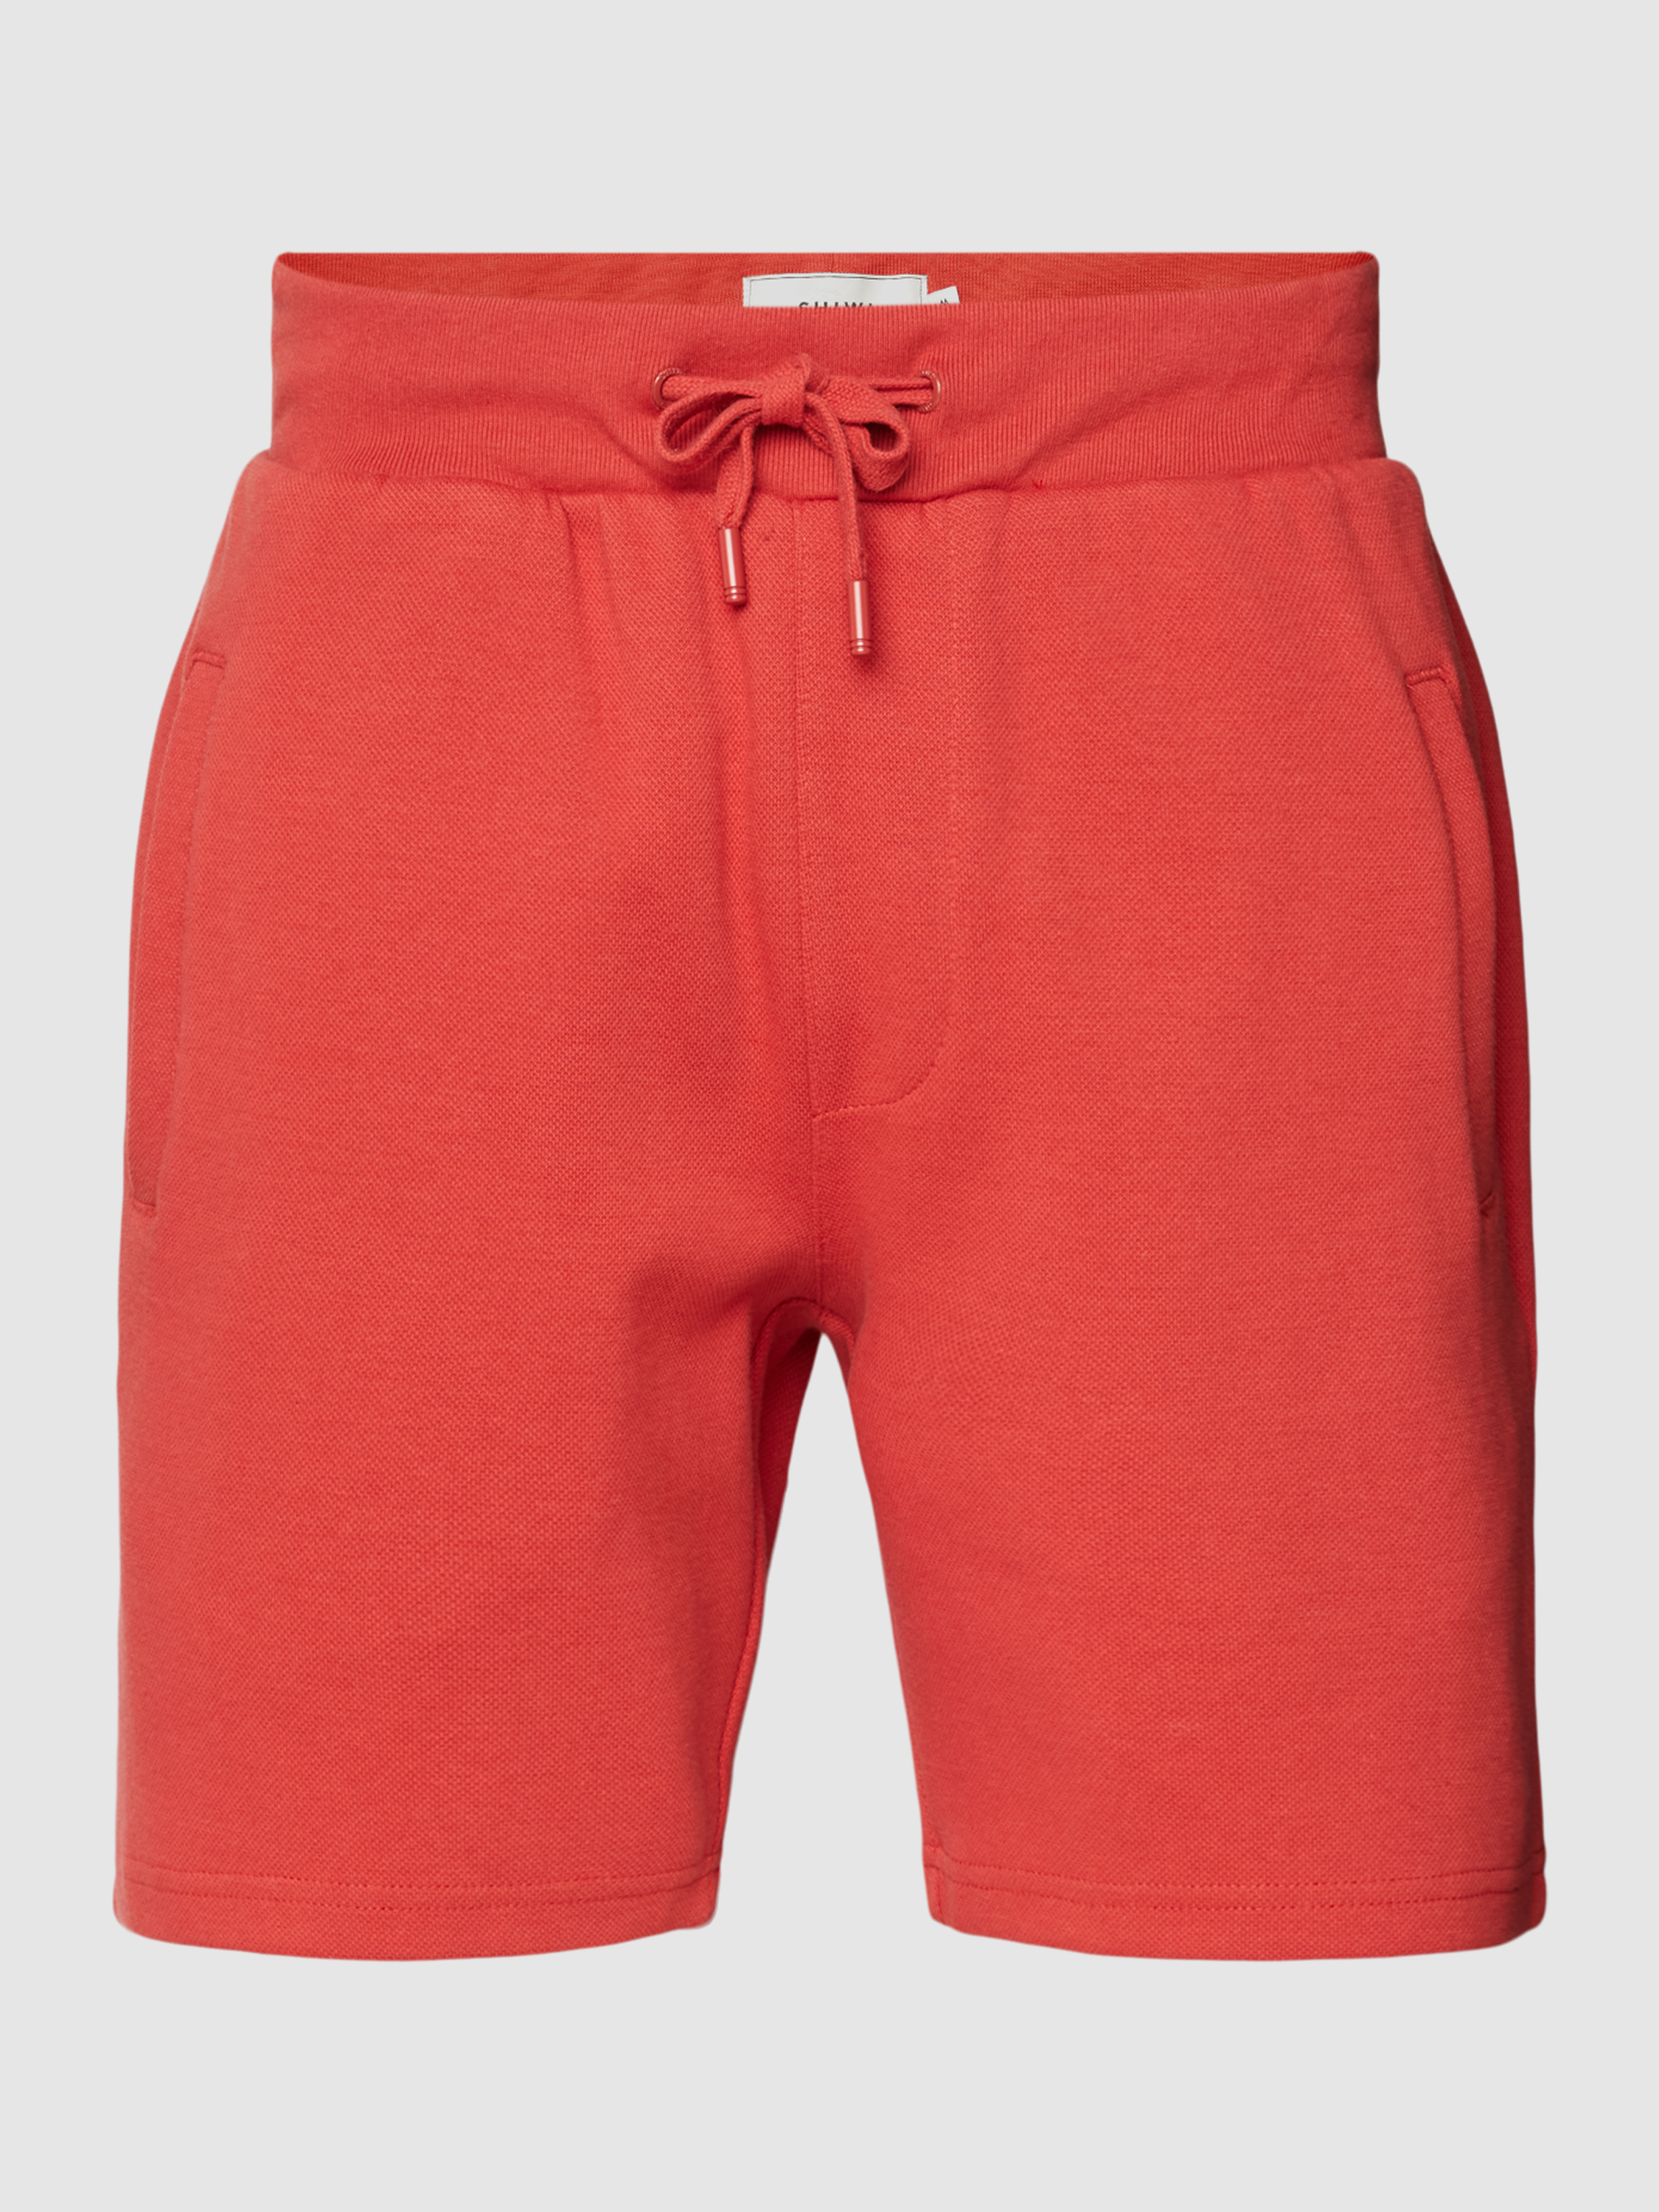 Повседневные шорты мужские Shiwi 1777585 красные 2XL (доставка из-за рубежа)